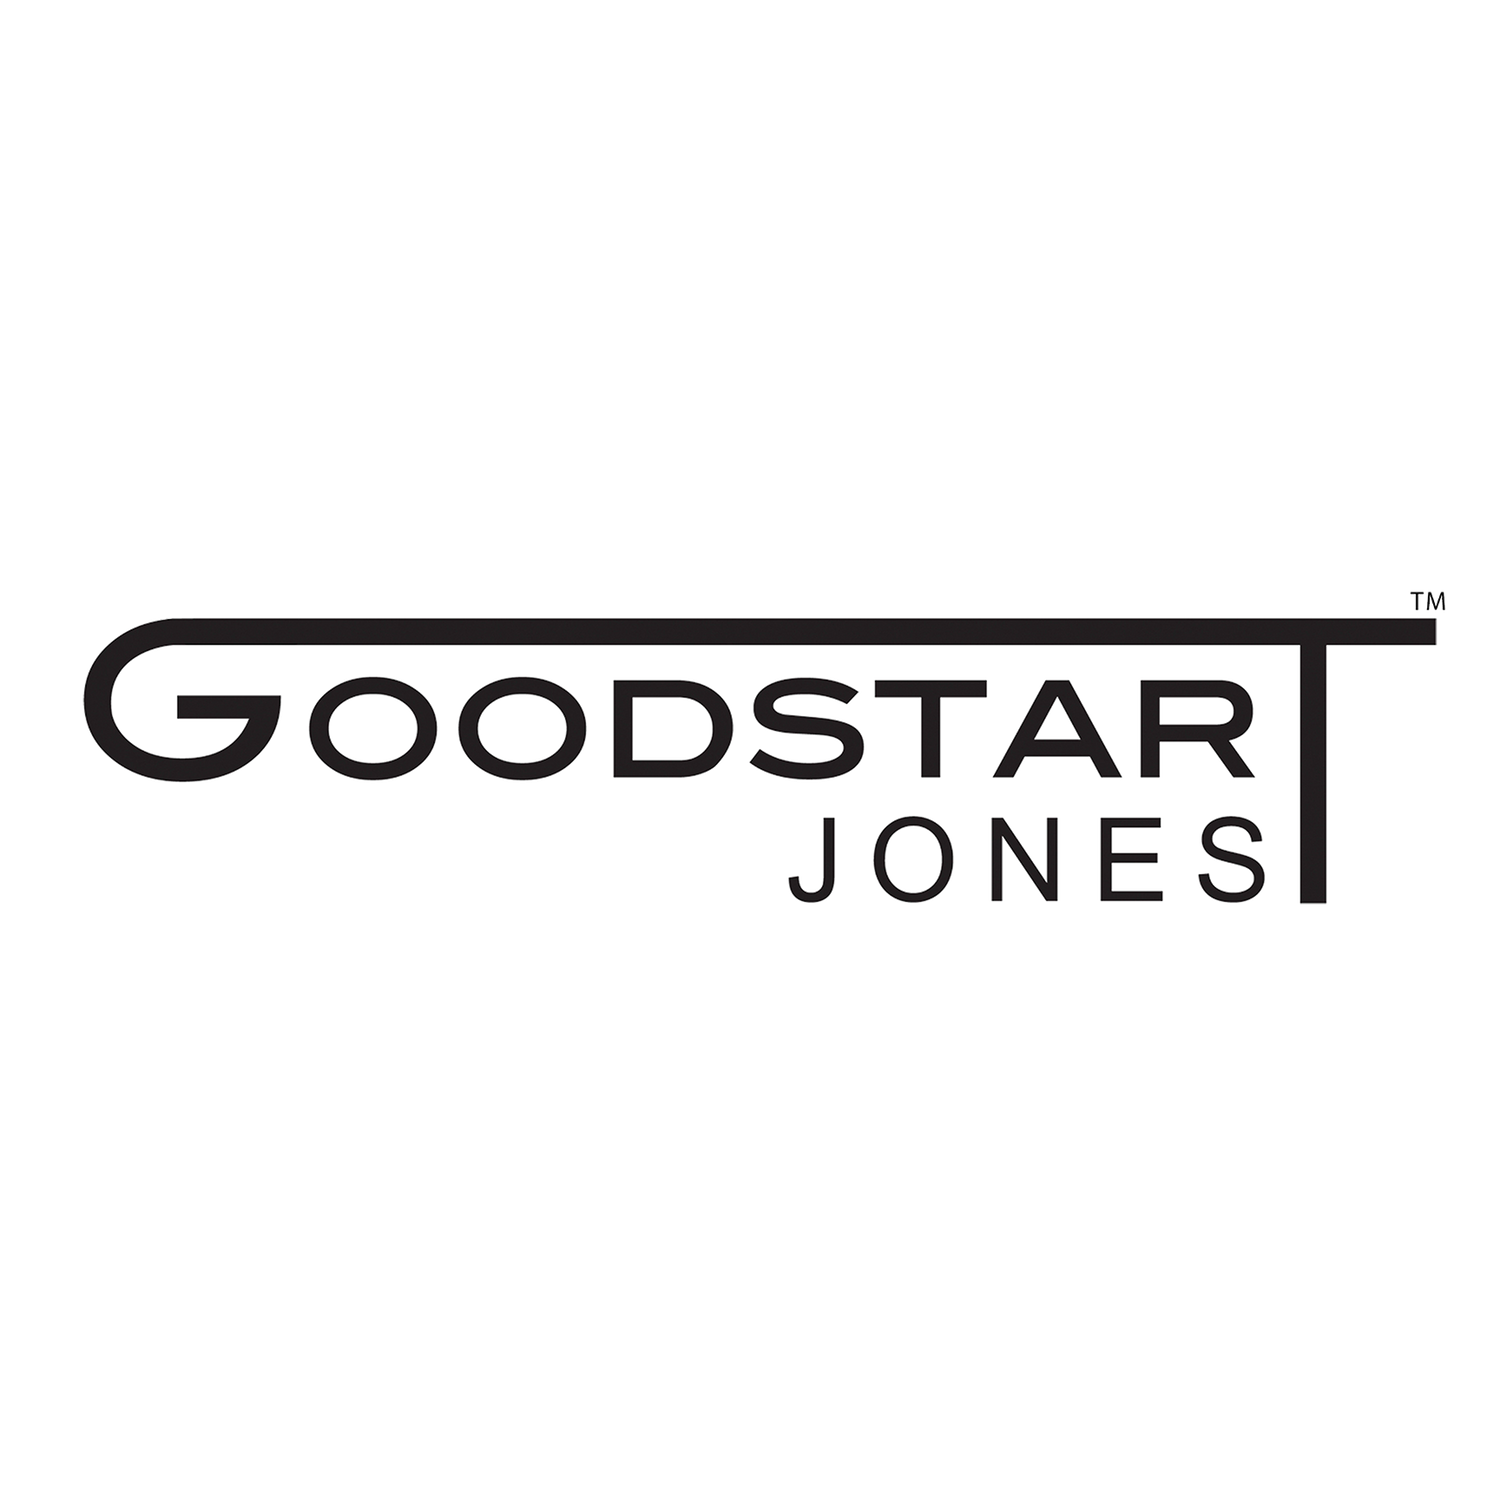 Goodstart Jones bag manufactures